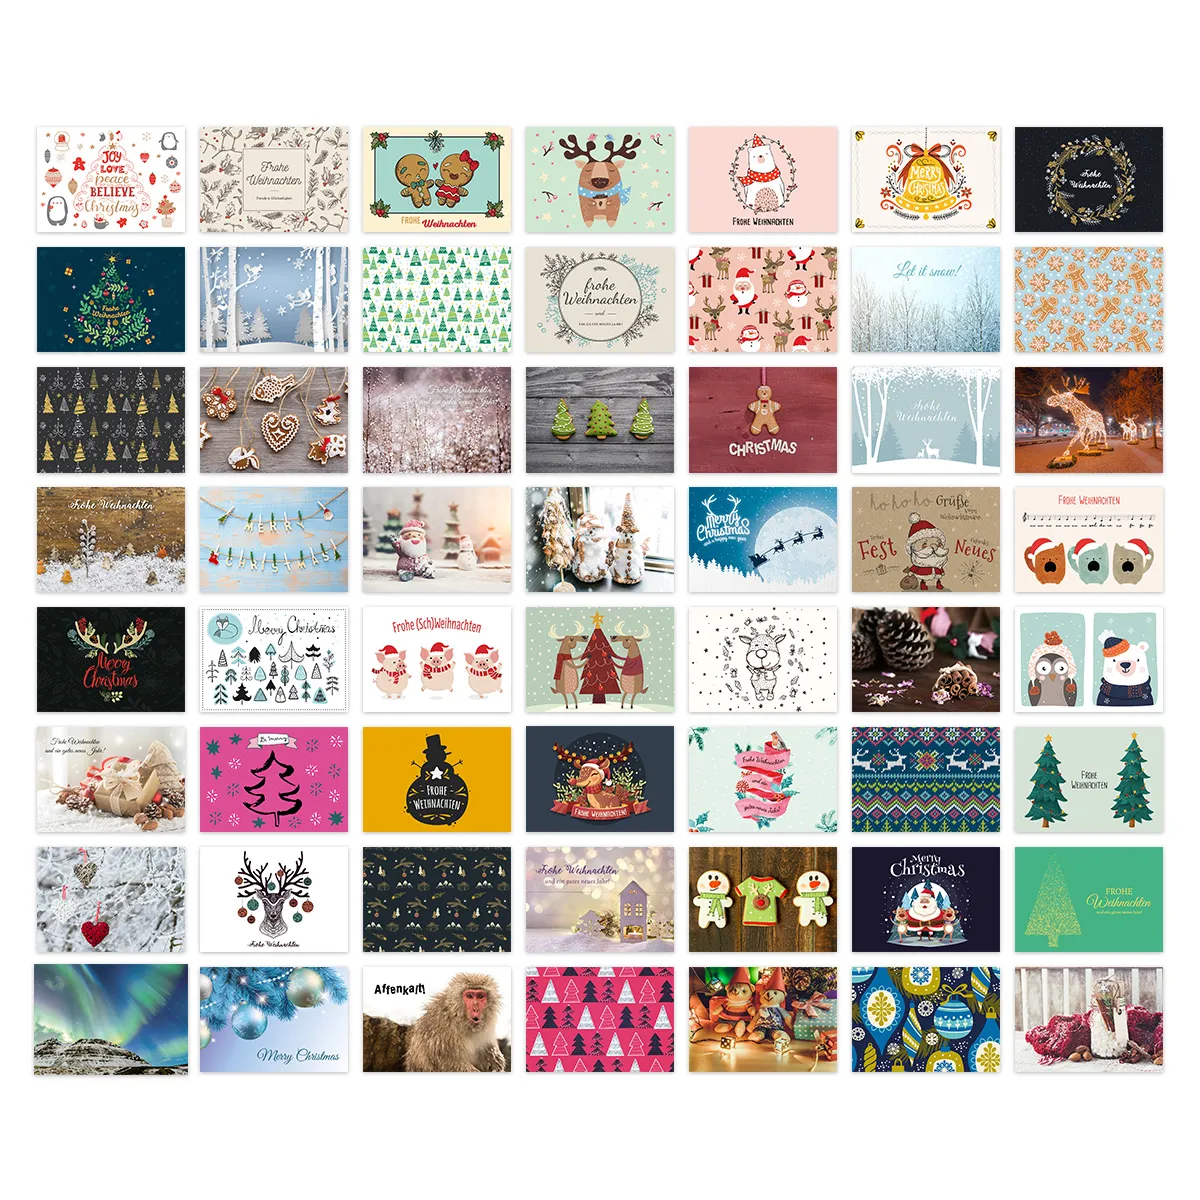 Weihnachtskarten Postkarten 56 Stück - Motiv-Set 1